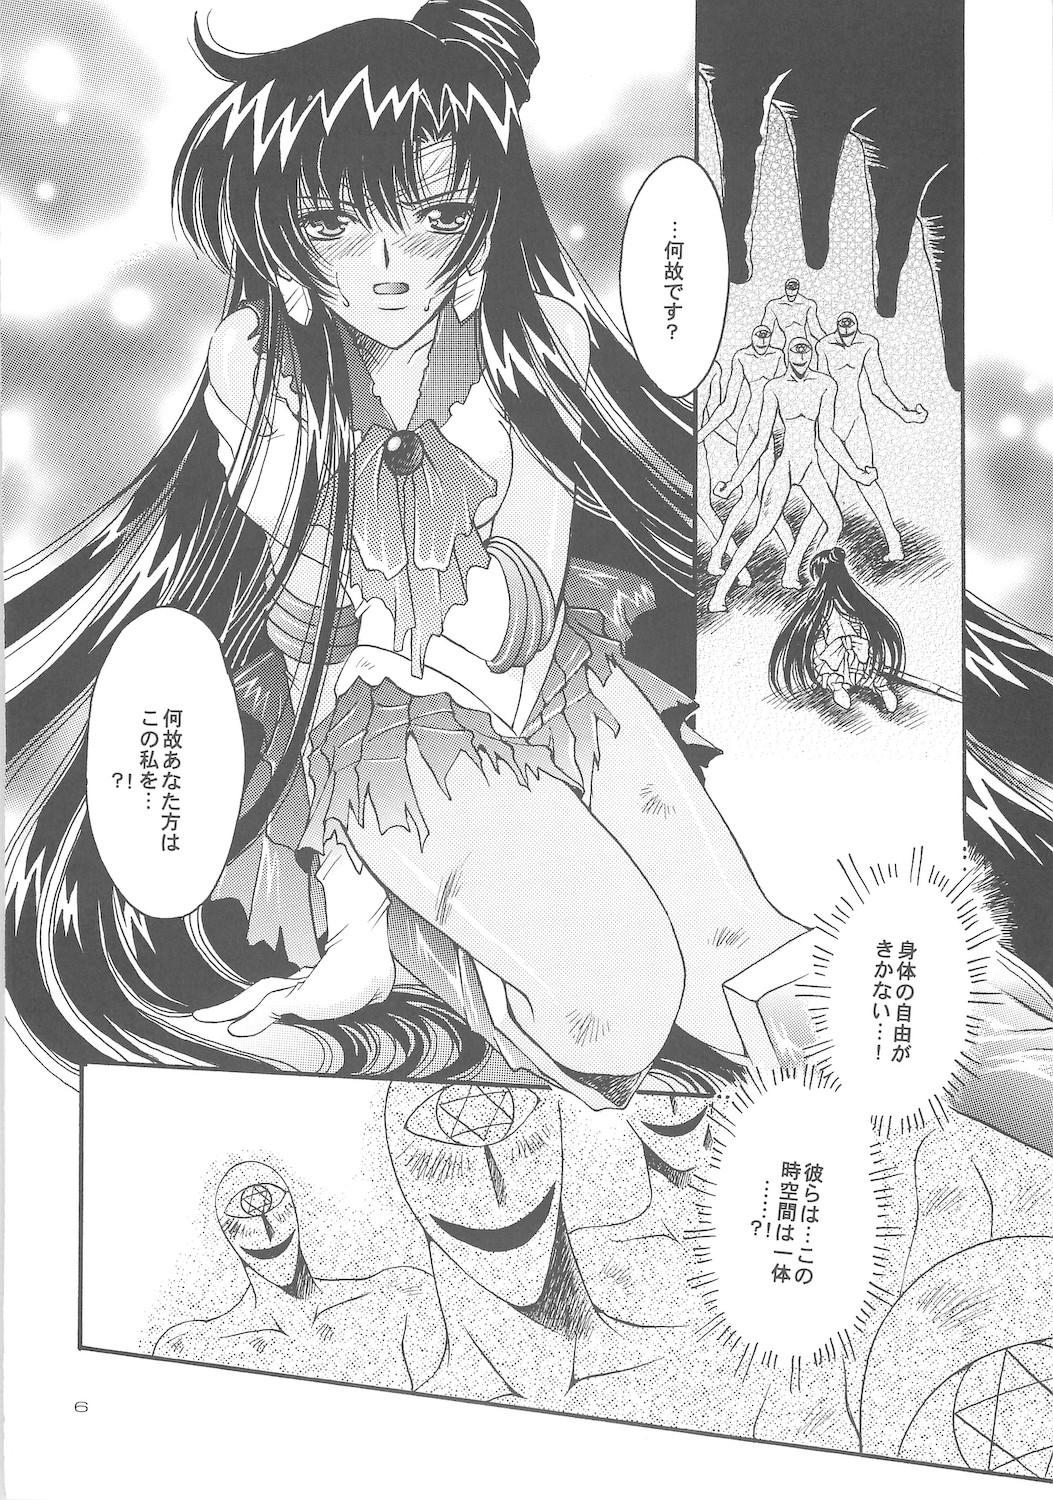 Retro Owaru Sekai dai 4 shou - Sailor moon Publico - Page 6